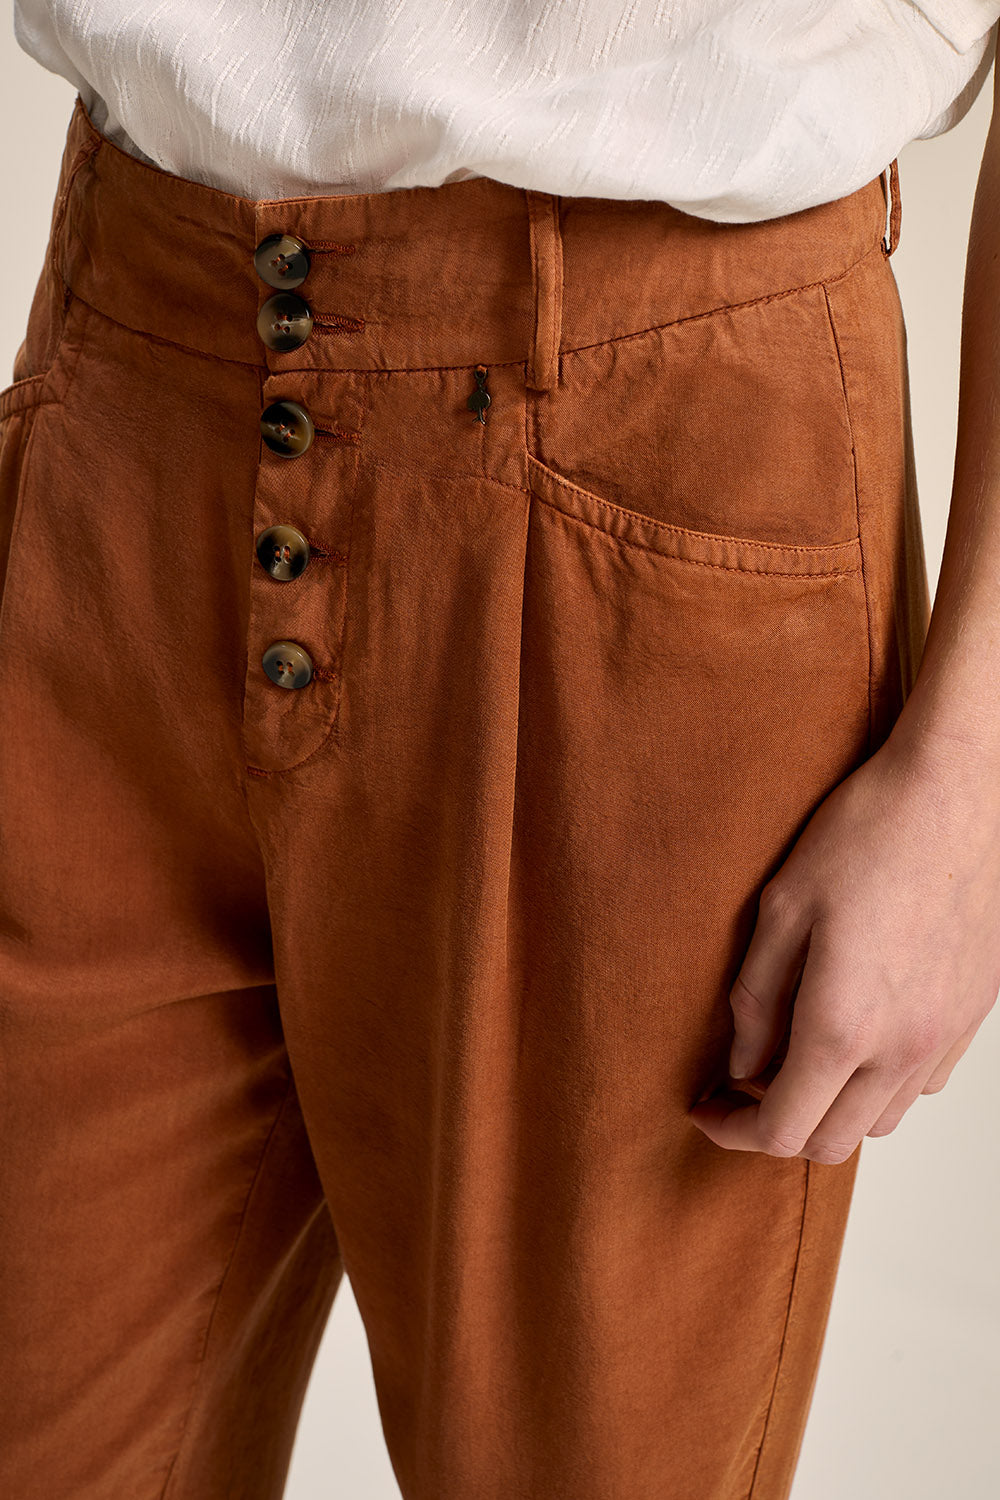 PLUTON - Pantalon droit camel avec boutons apparents